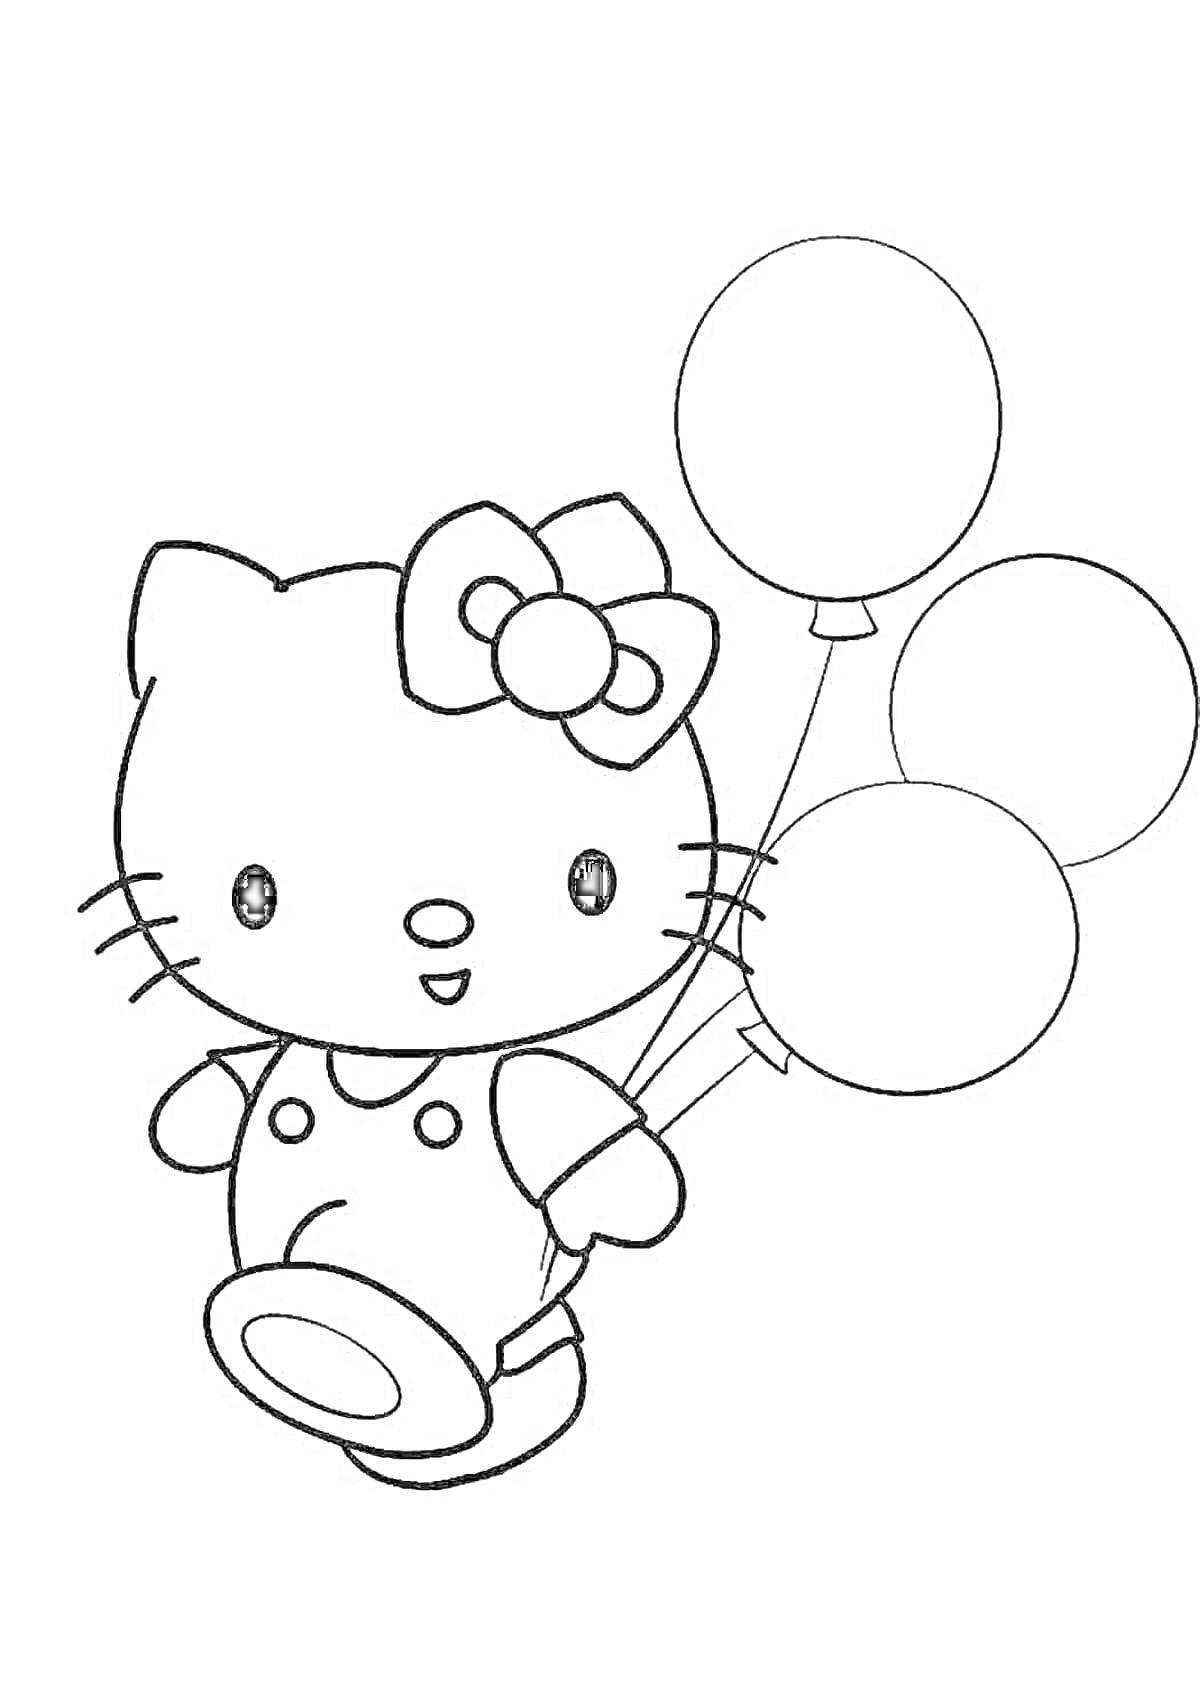 Раскраска Хелло Китти с тремя воздушными шарами